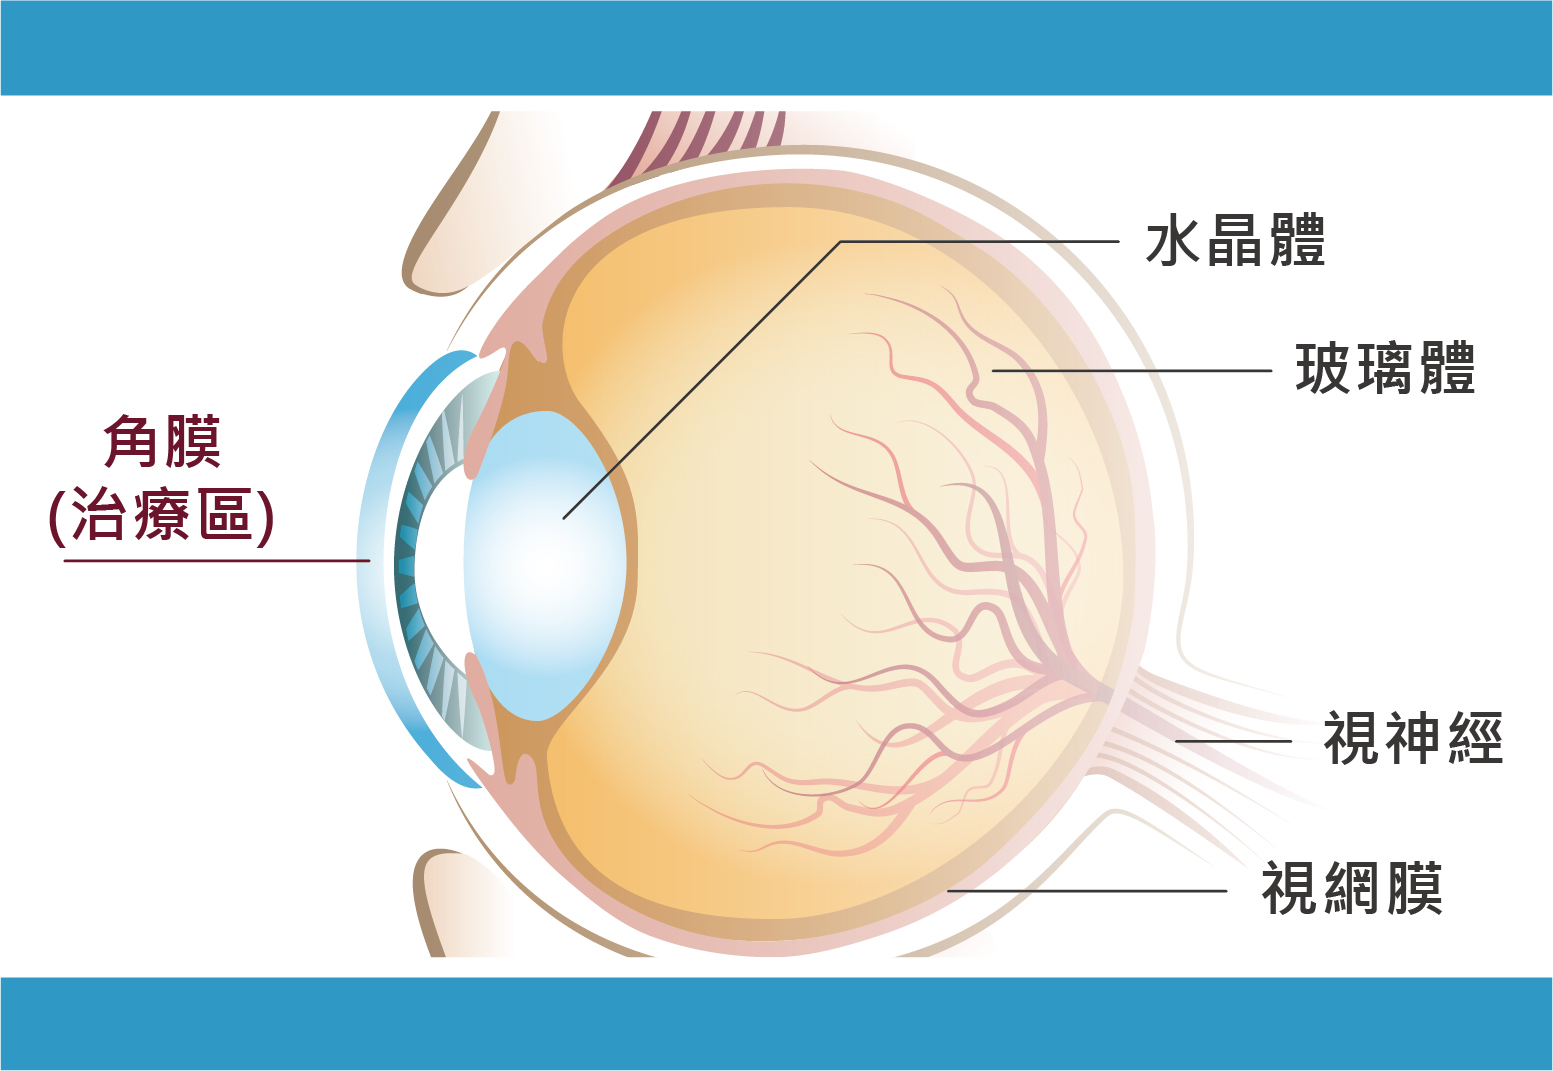 減少近視度數的方式是改變角膜的厚度。